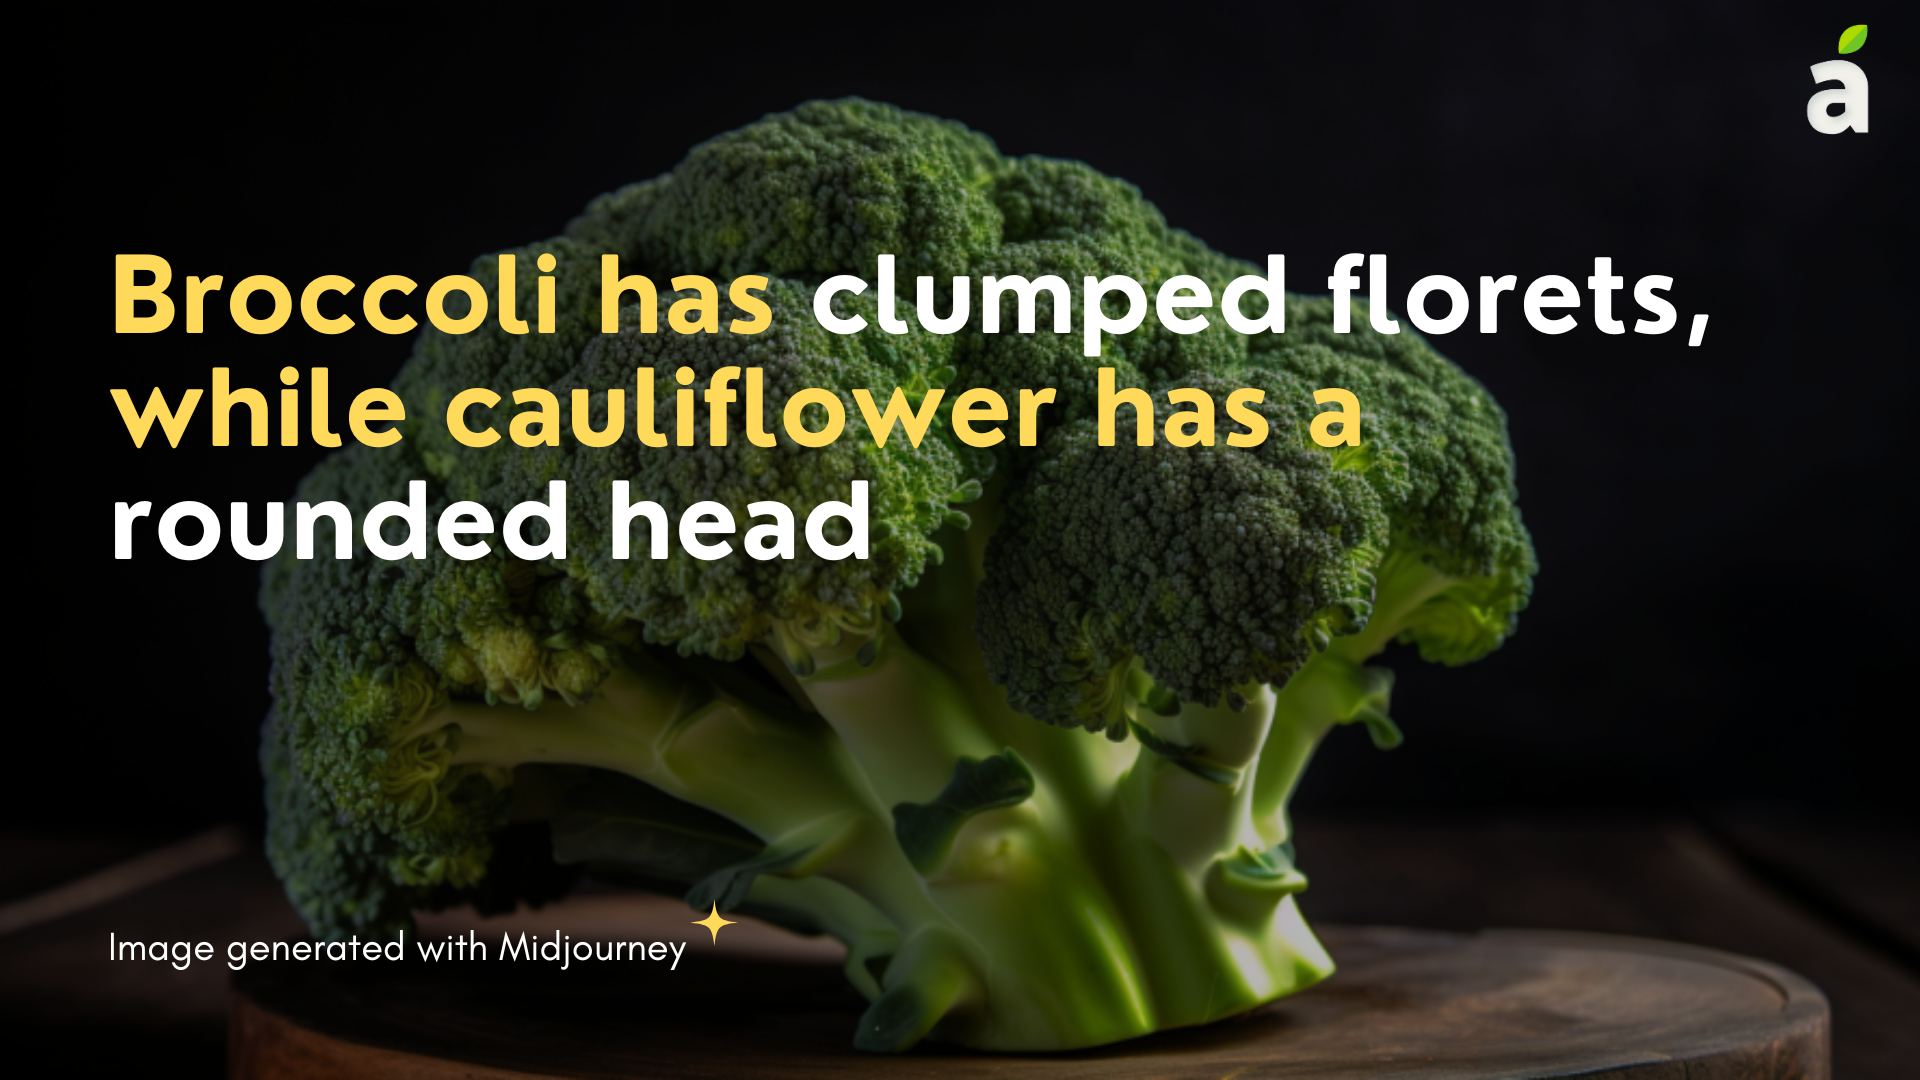 Cauliflower blog